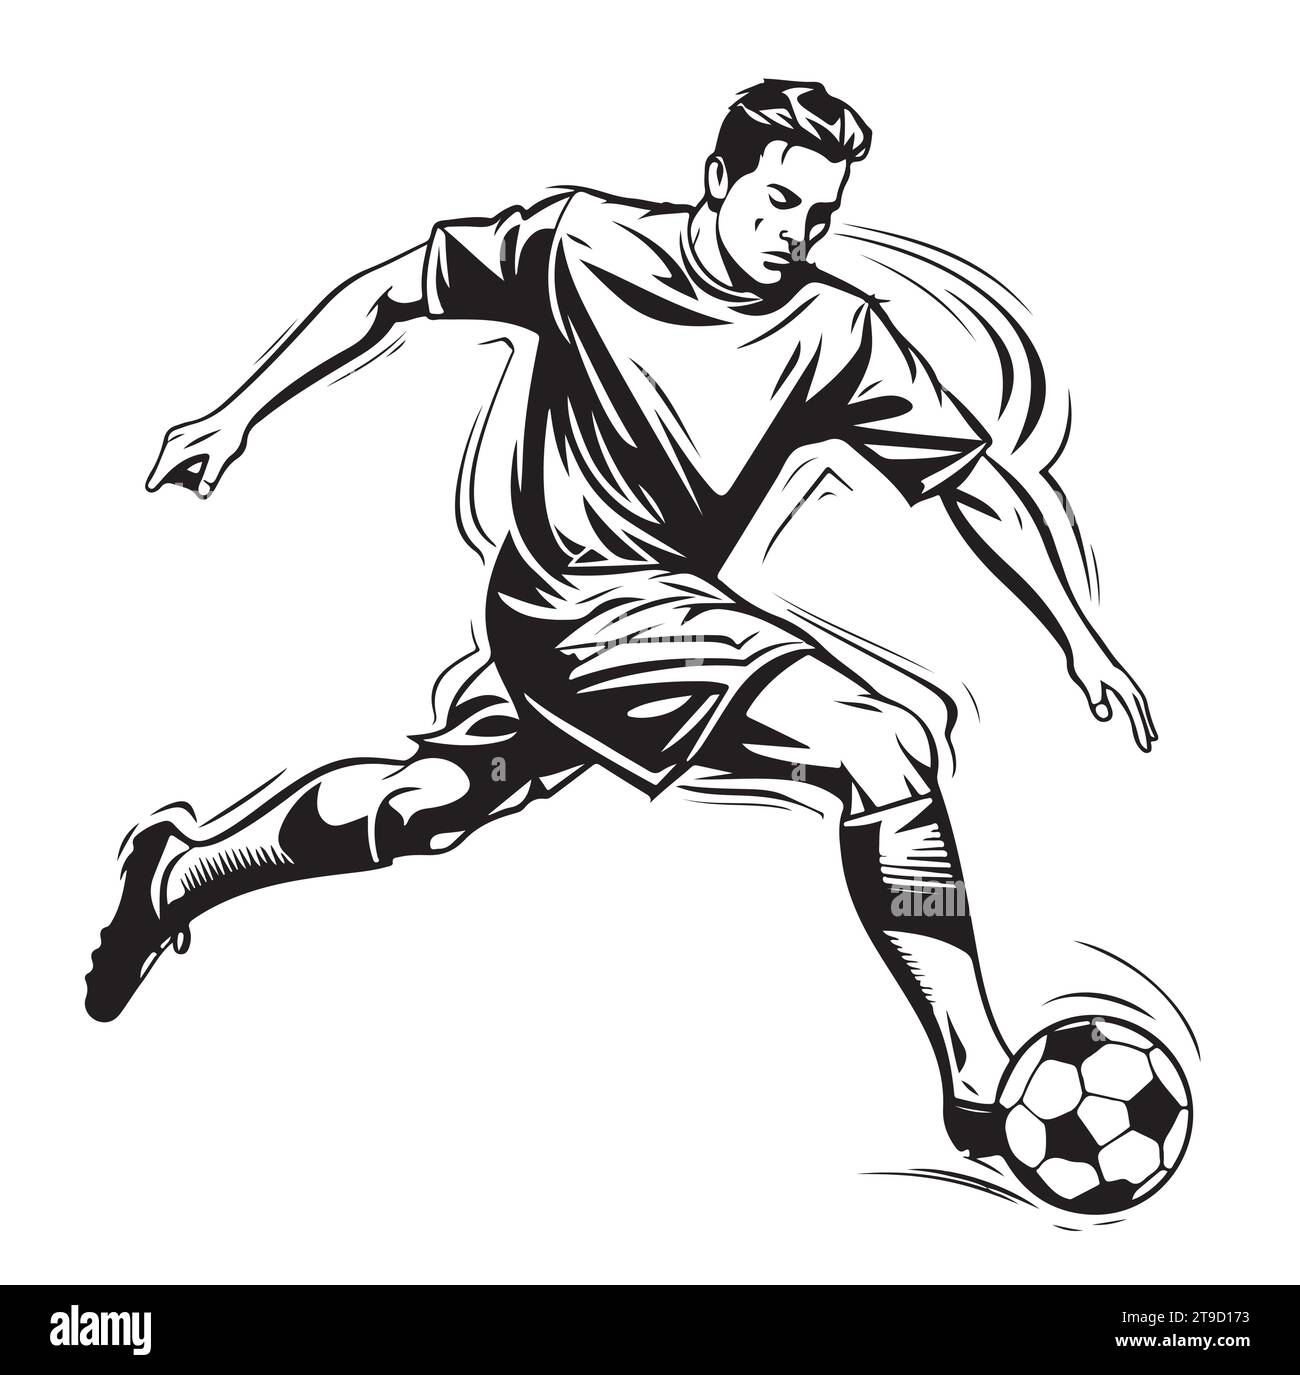 Handskizze des Fußballs. Vektorillustration Sport Stock Vektor